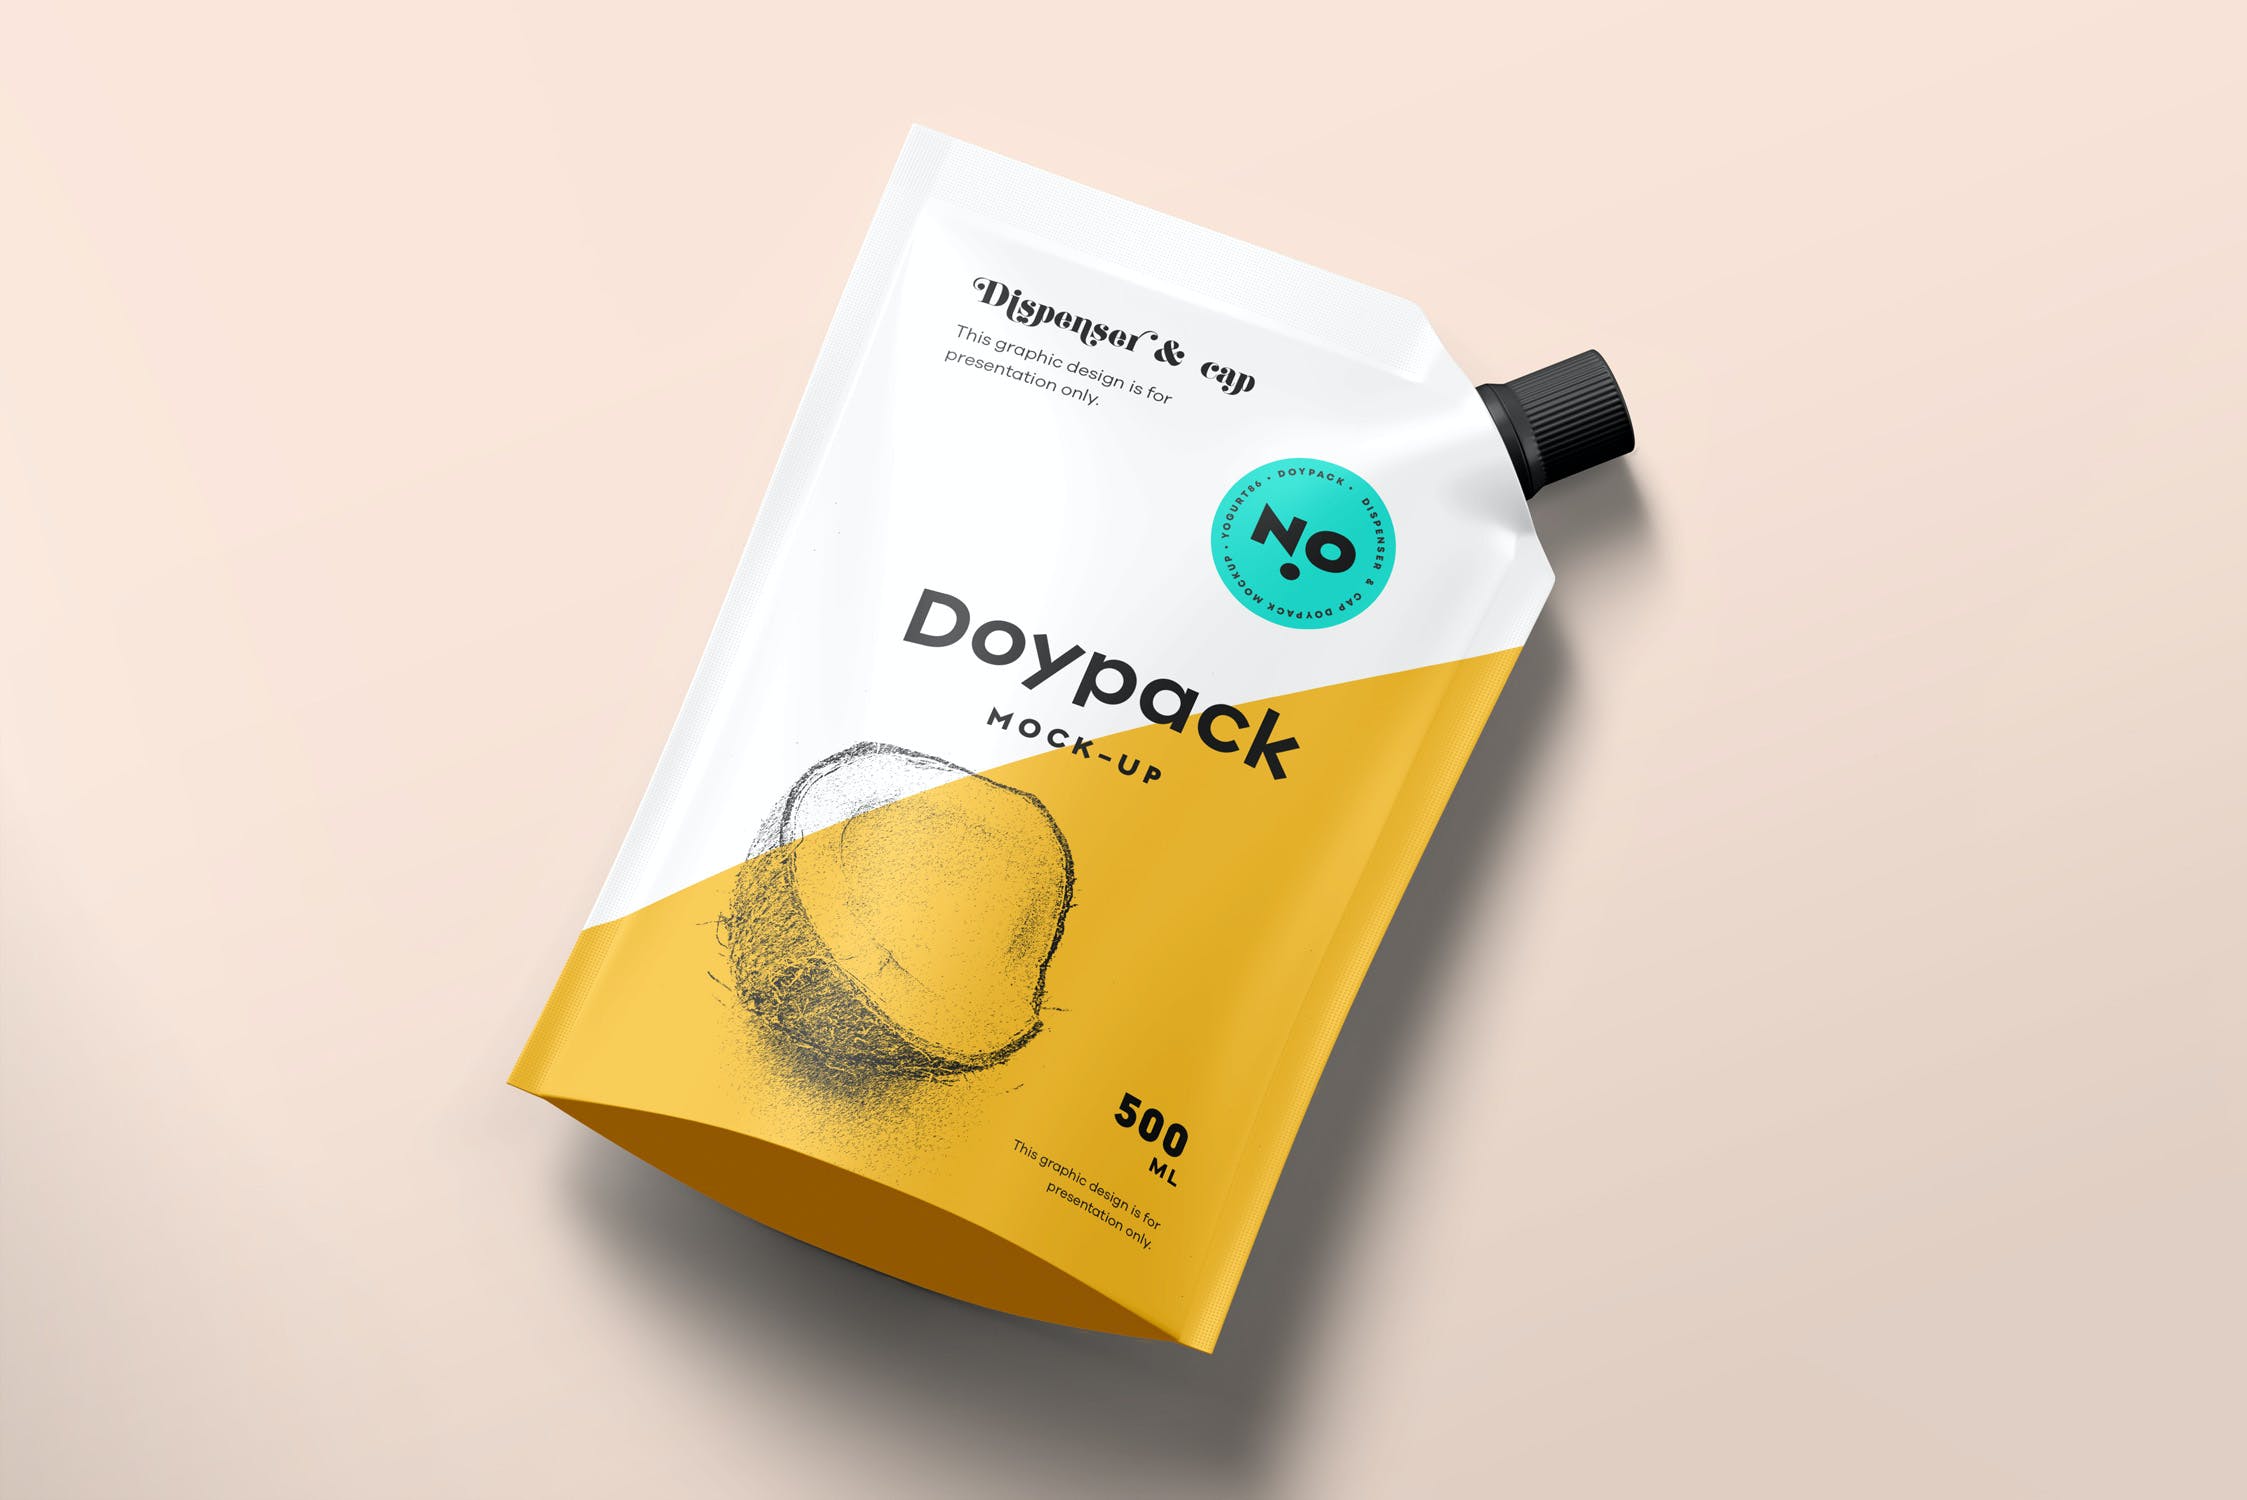 固体饮料包装袋食品包装袋模板样机Doypack Mock-up 5  UKZS3E5插图2